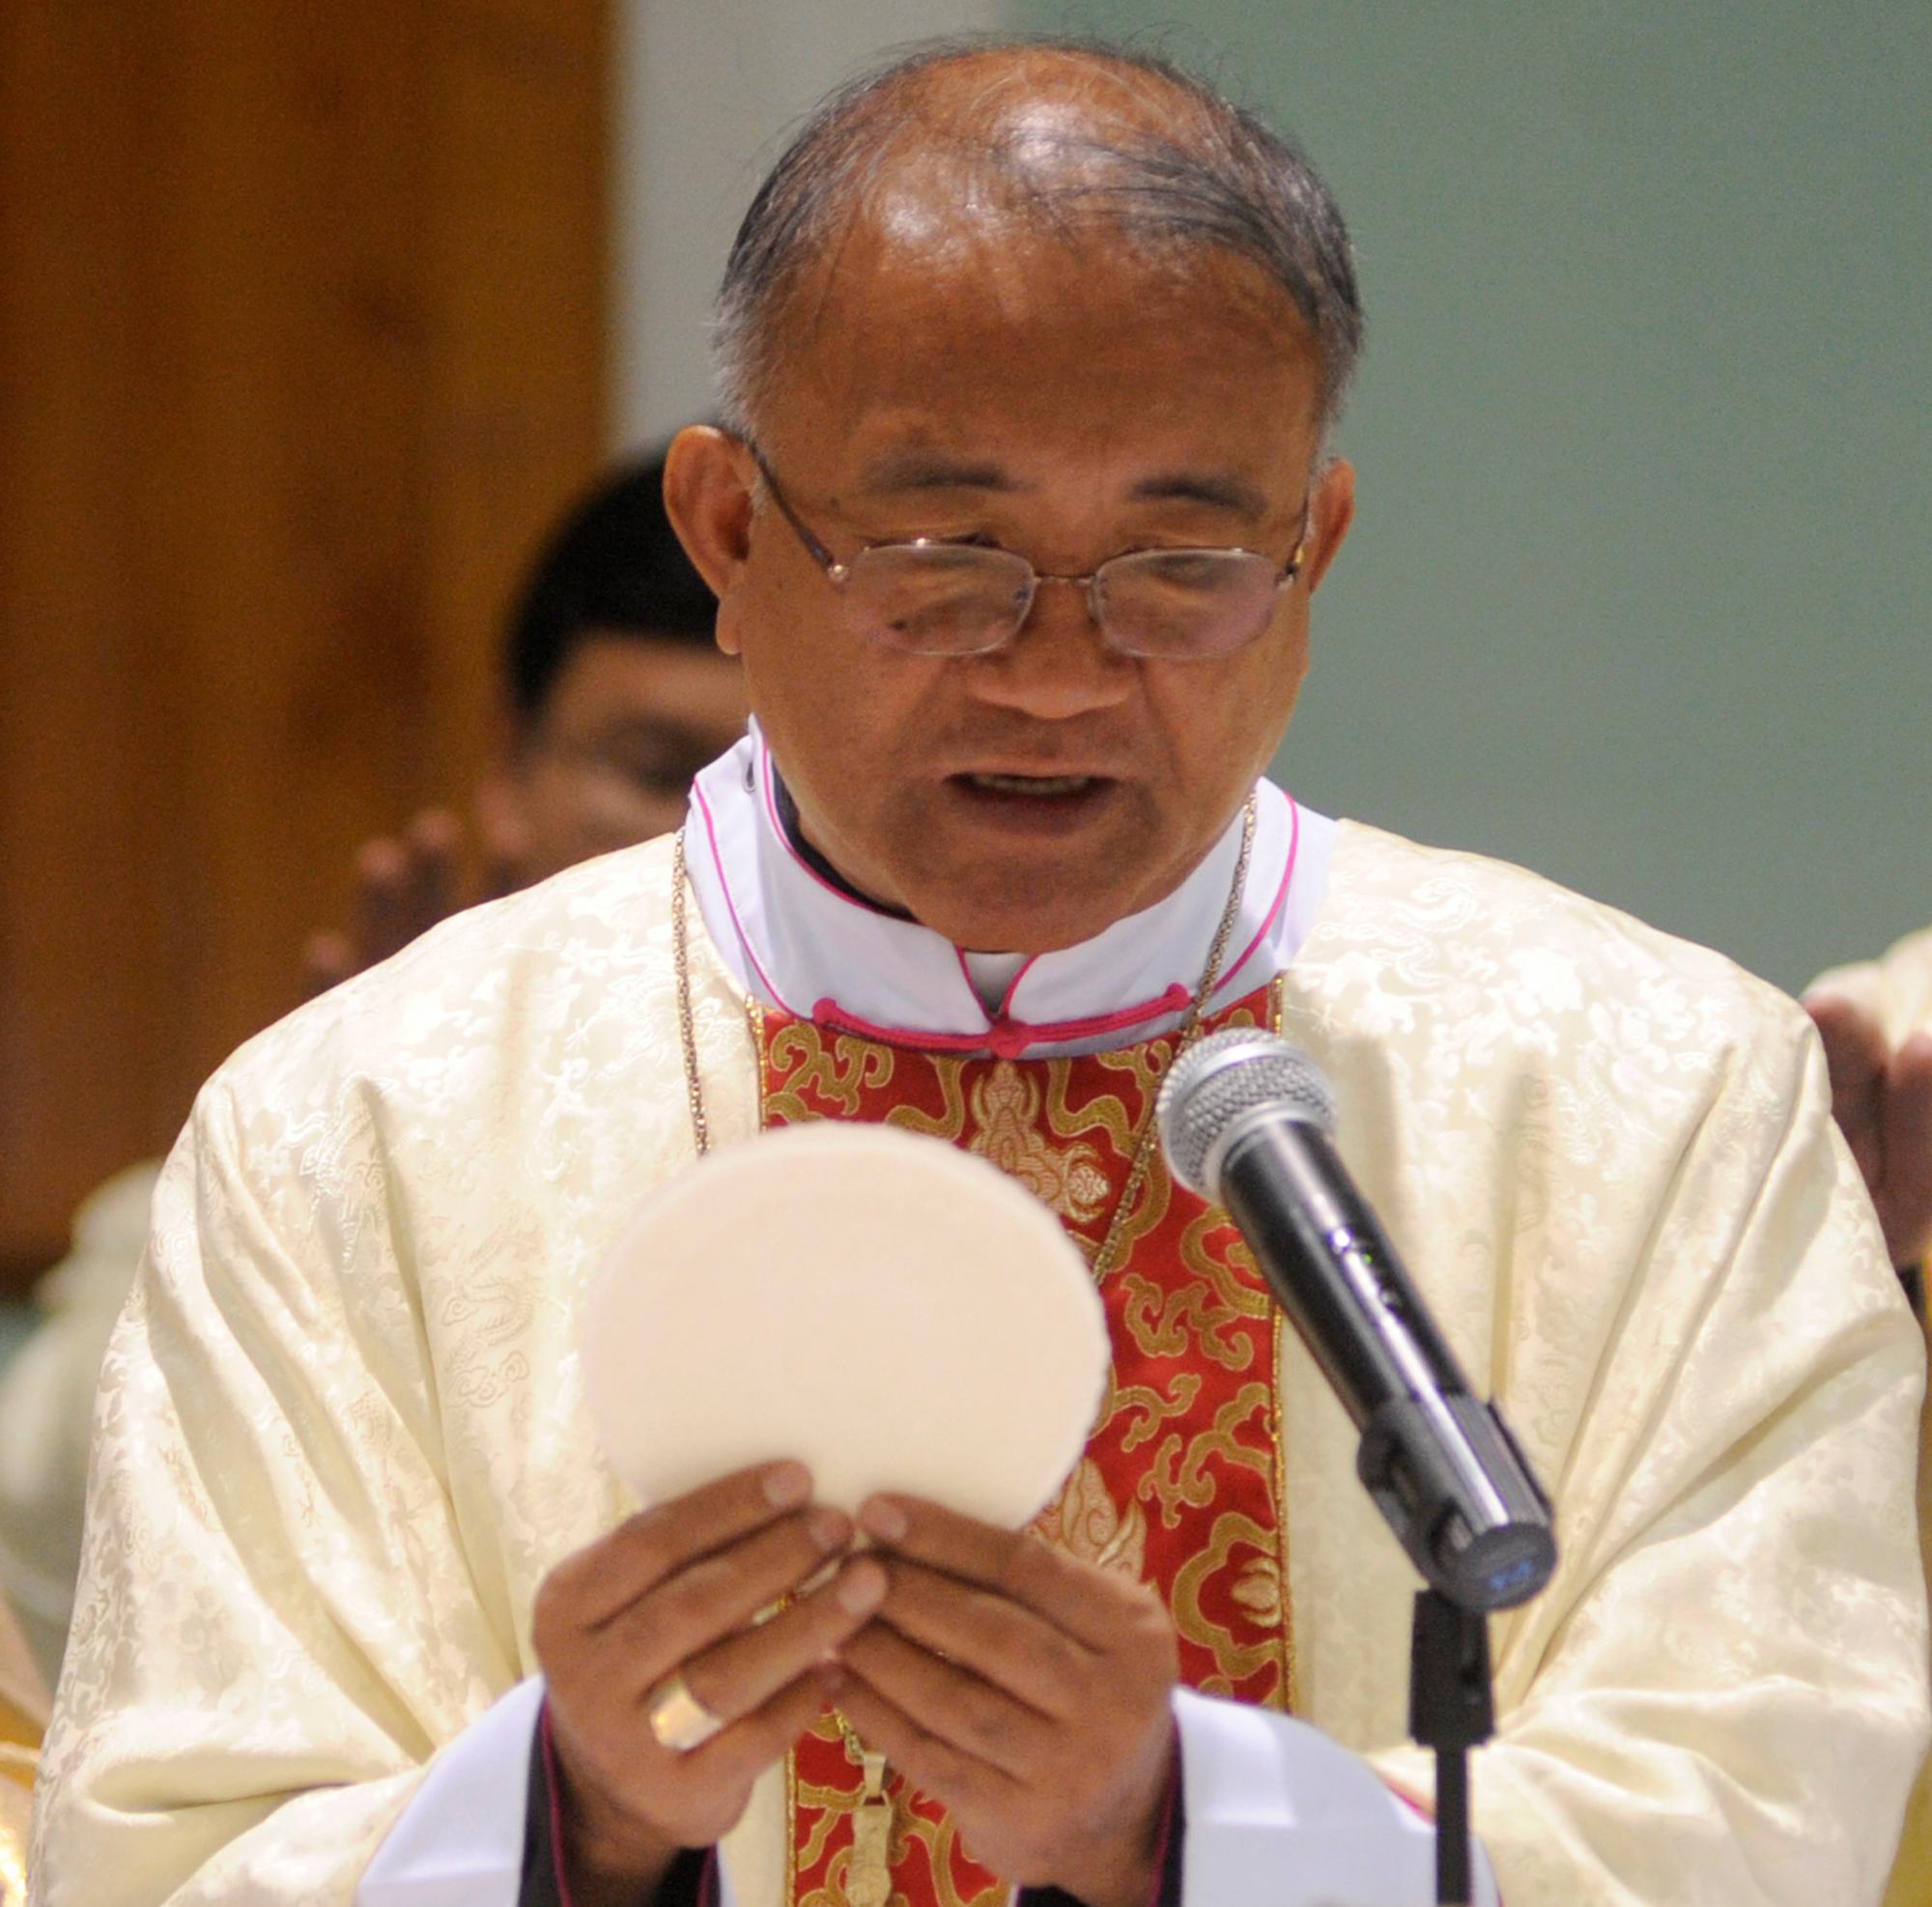 Mgr. Wenceslao Selga Padilla van Ulaanbaatar, de bisschop van de jongste katholieke gemeenschap ter wereld, is overleden